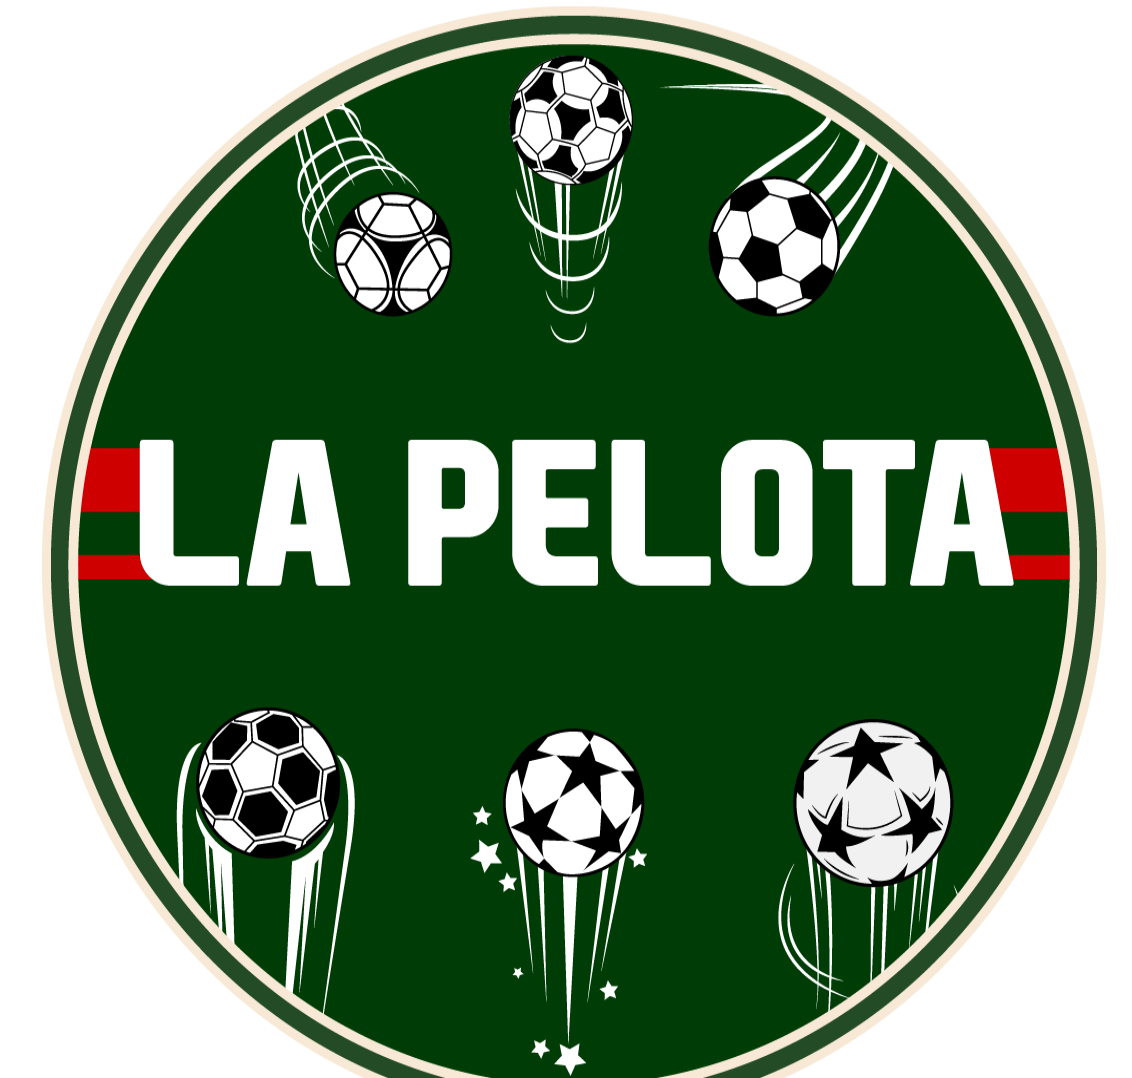 La Pelota (by Zied Jendoubi)